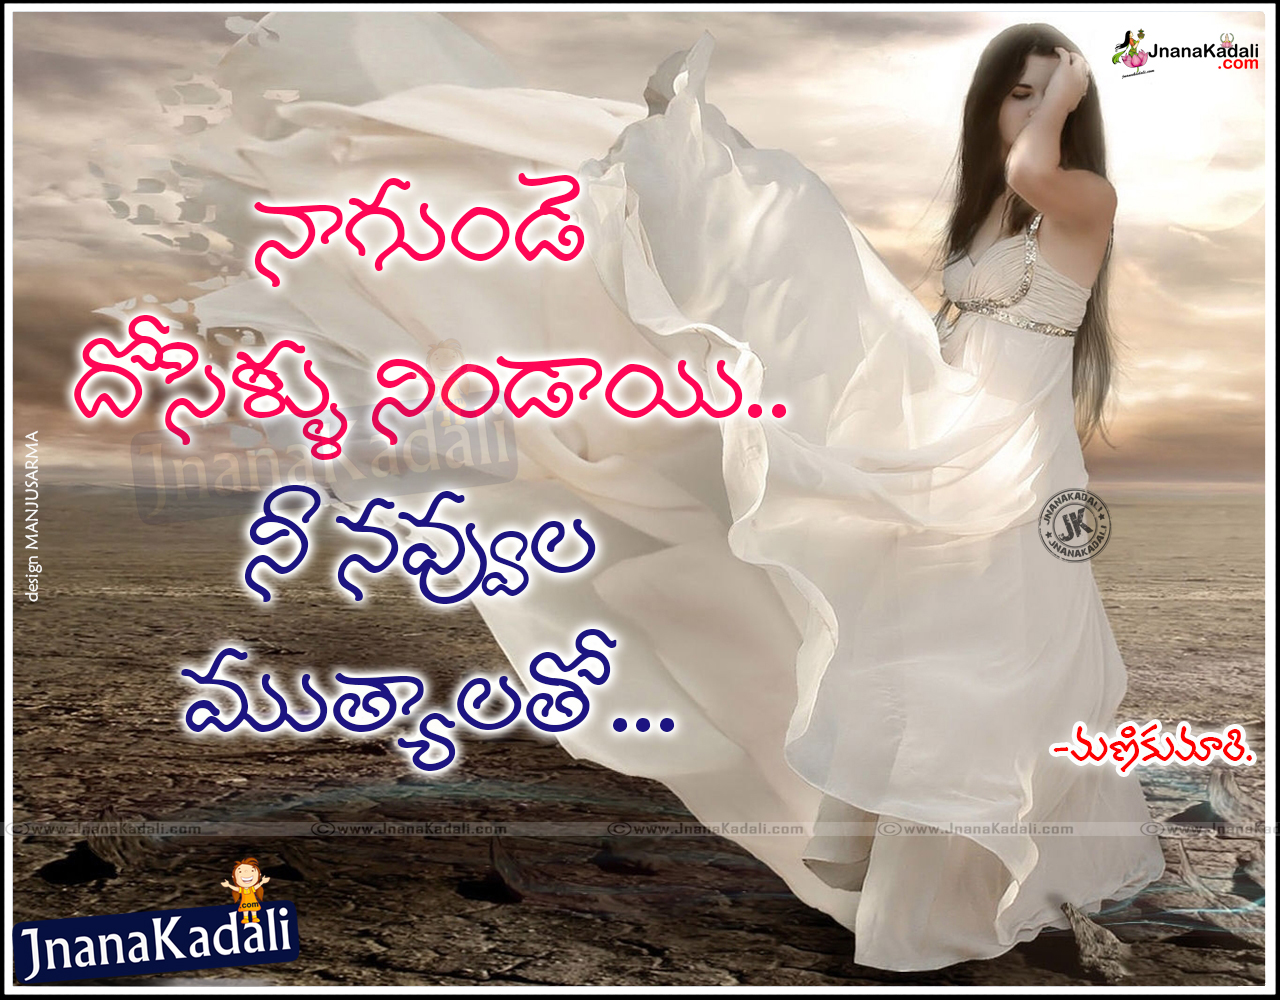 Telugu Love Failure Quotes for Whatsapp Stautus | JNANA  |Telugu  Quotes|English quotes|Hindi quotes|Tamil quotes|Dharmasandehalu|